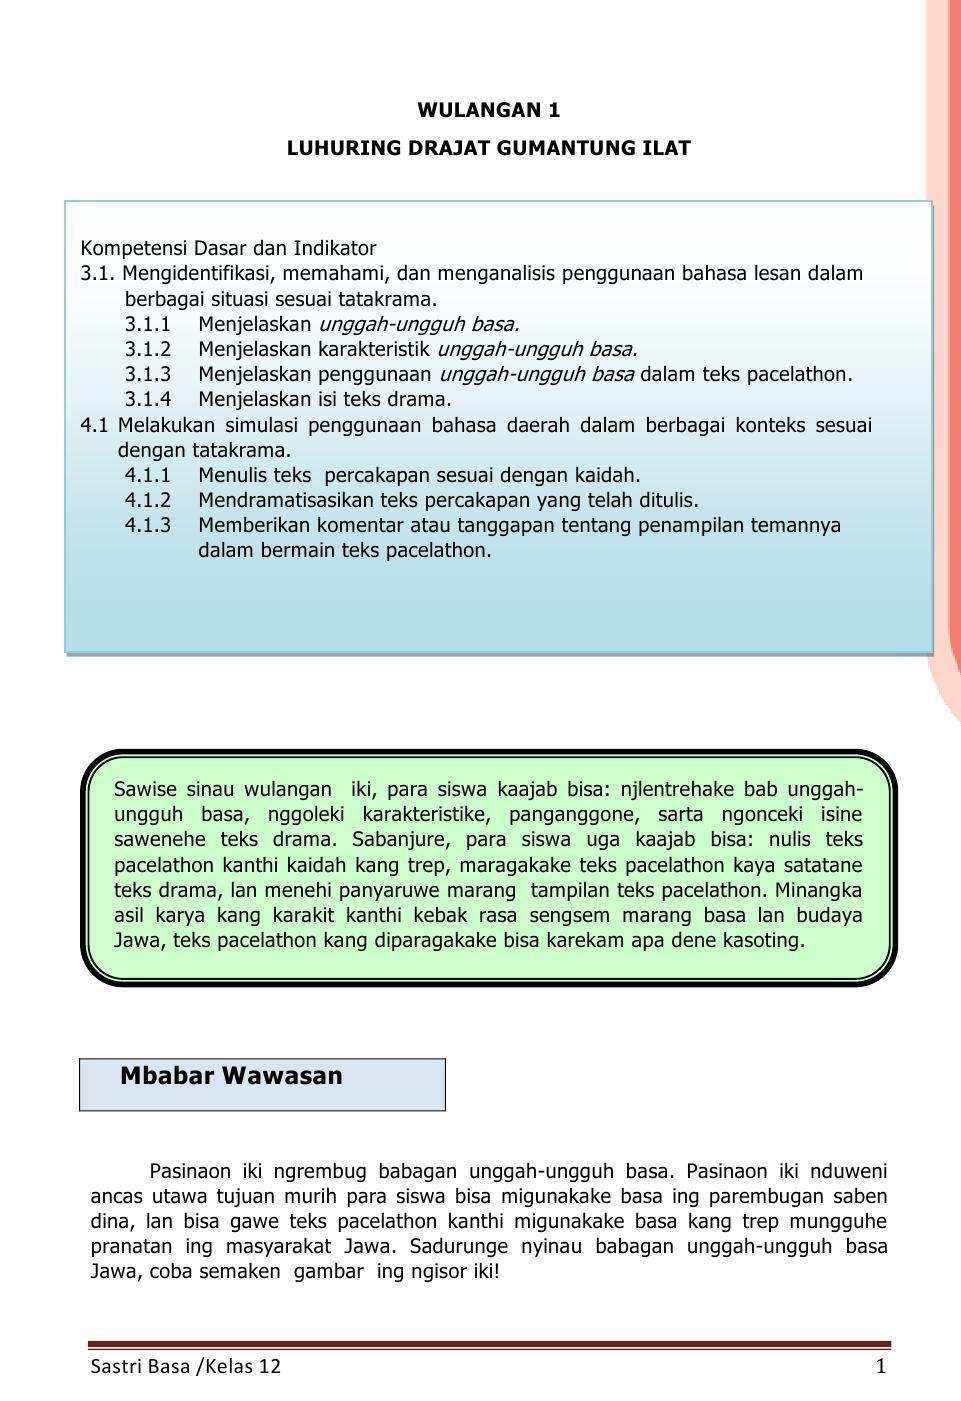 Buku Siswa Kelas 12 Bahasa Jawa Sastri Basa 2015 For Android Apk Download